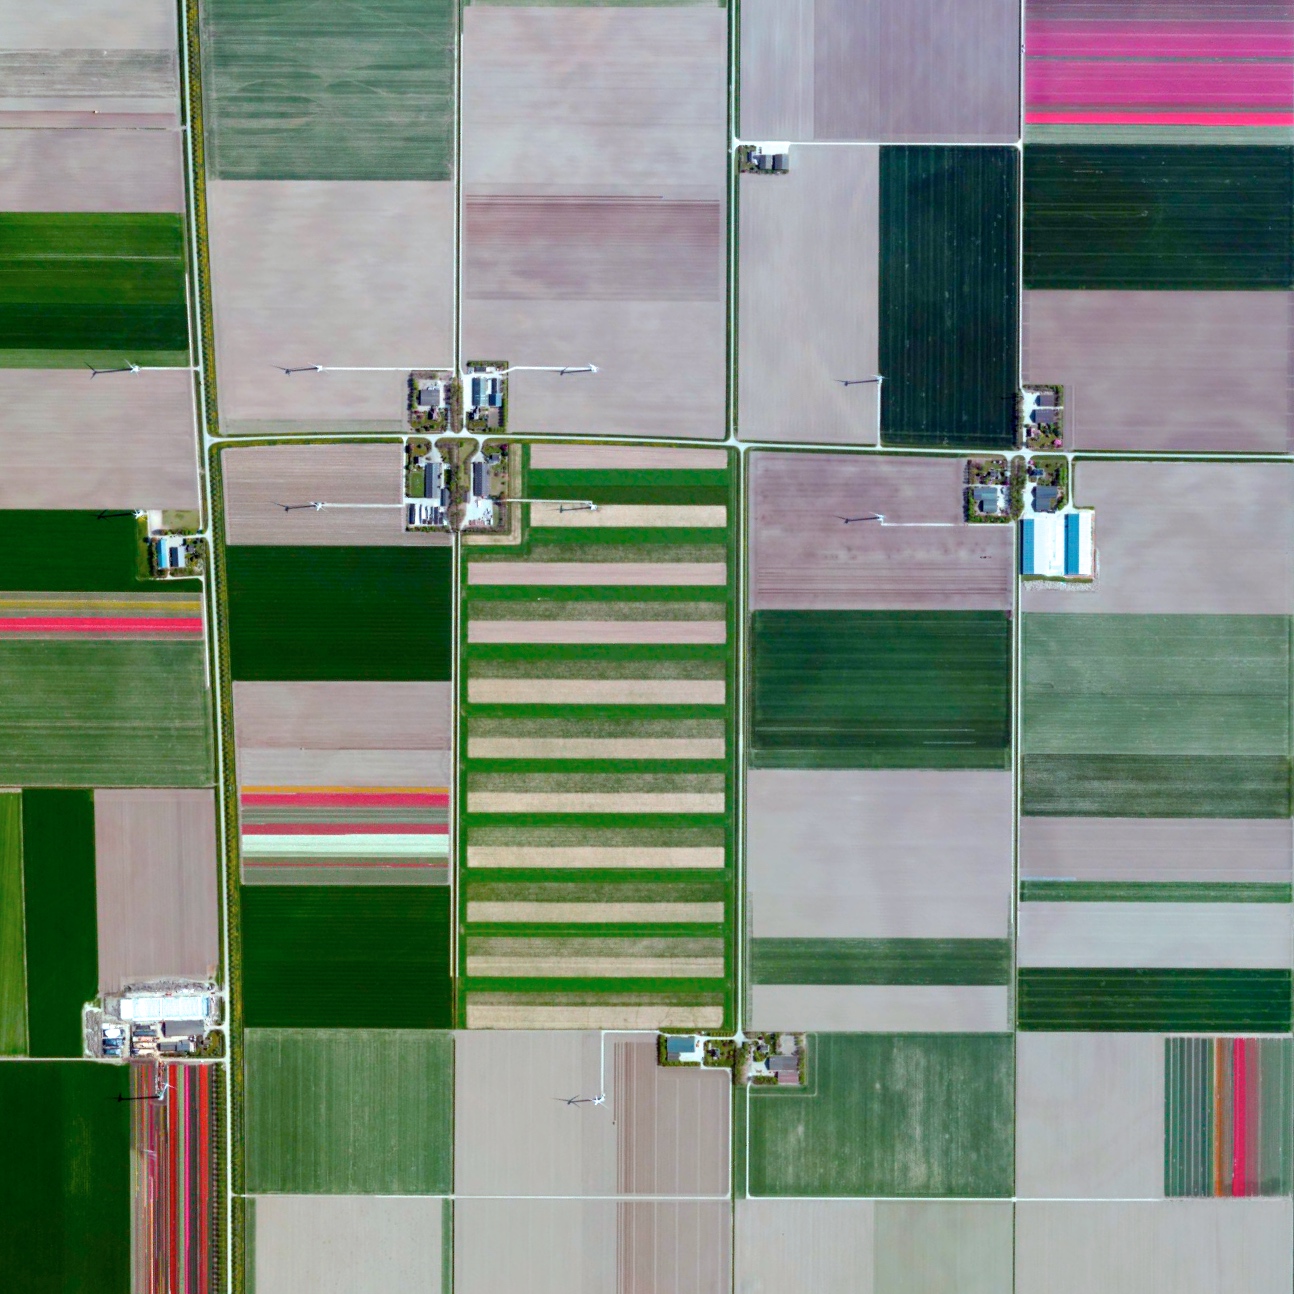 20 Εκπληκτικές Φωτογραφίες της Γης από Δορυφόρο - Θα αλλάξουν τον τρόπο που βλέπετε τον κόσμο - Εικόνα 9